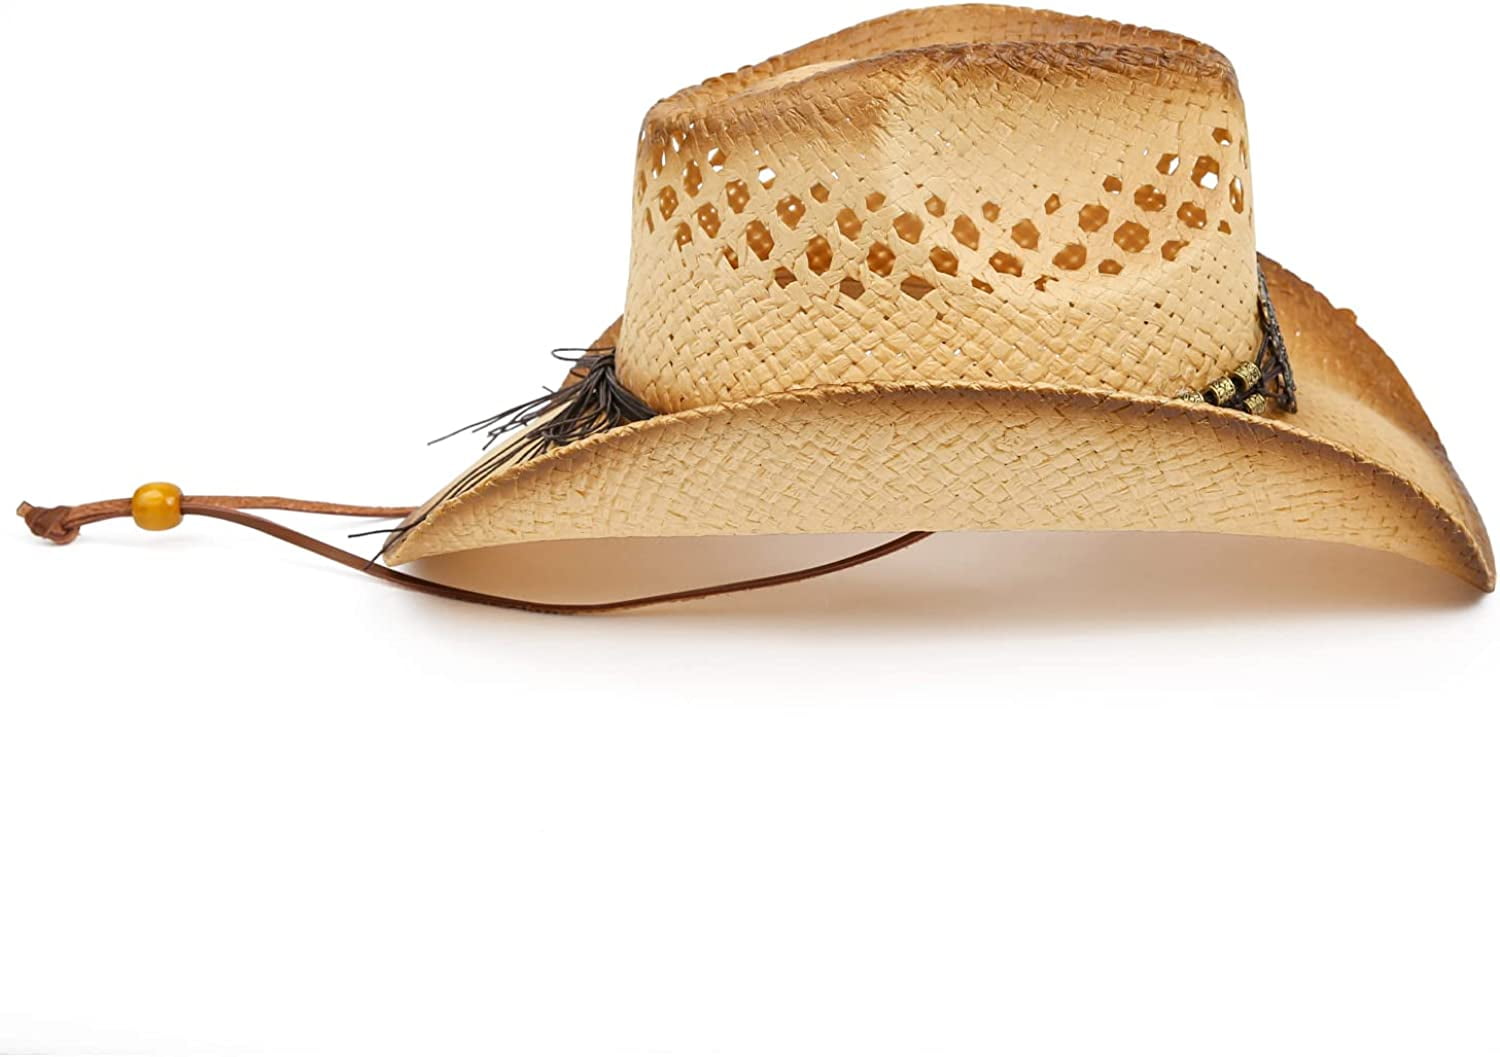 Livingston Men & Women's Woven Straw Cowboy Hat w/Hat Band A-blue